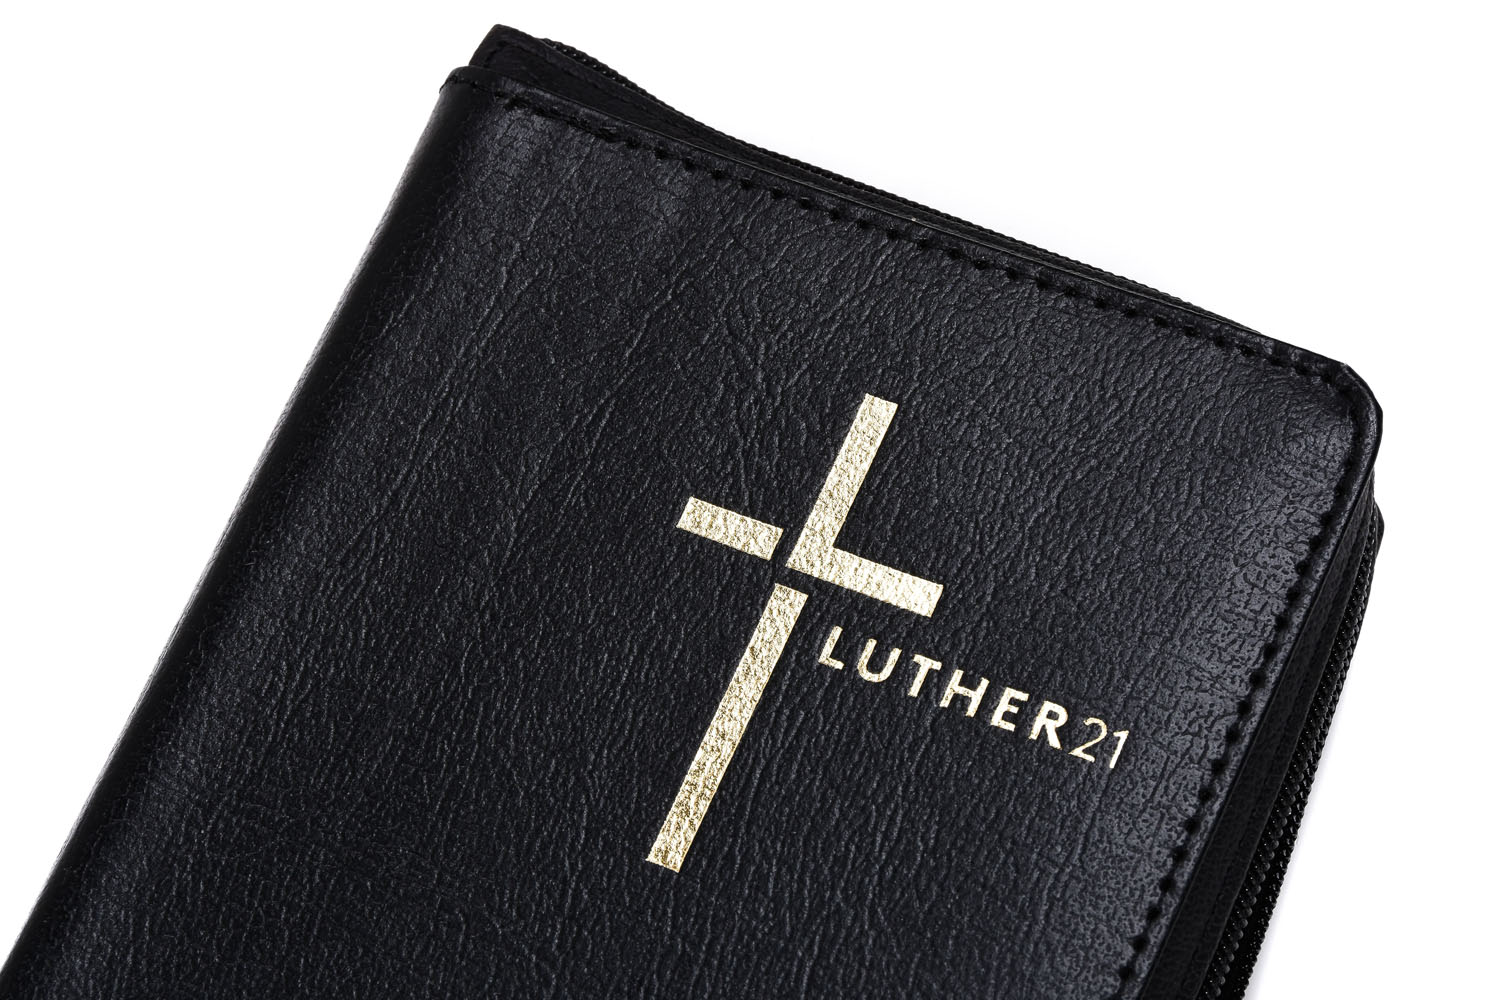 Luther21 - Taschenausgabe -  Lederfaserstoff schwarz